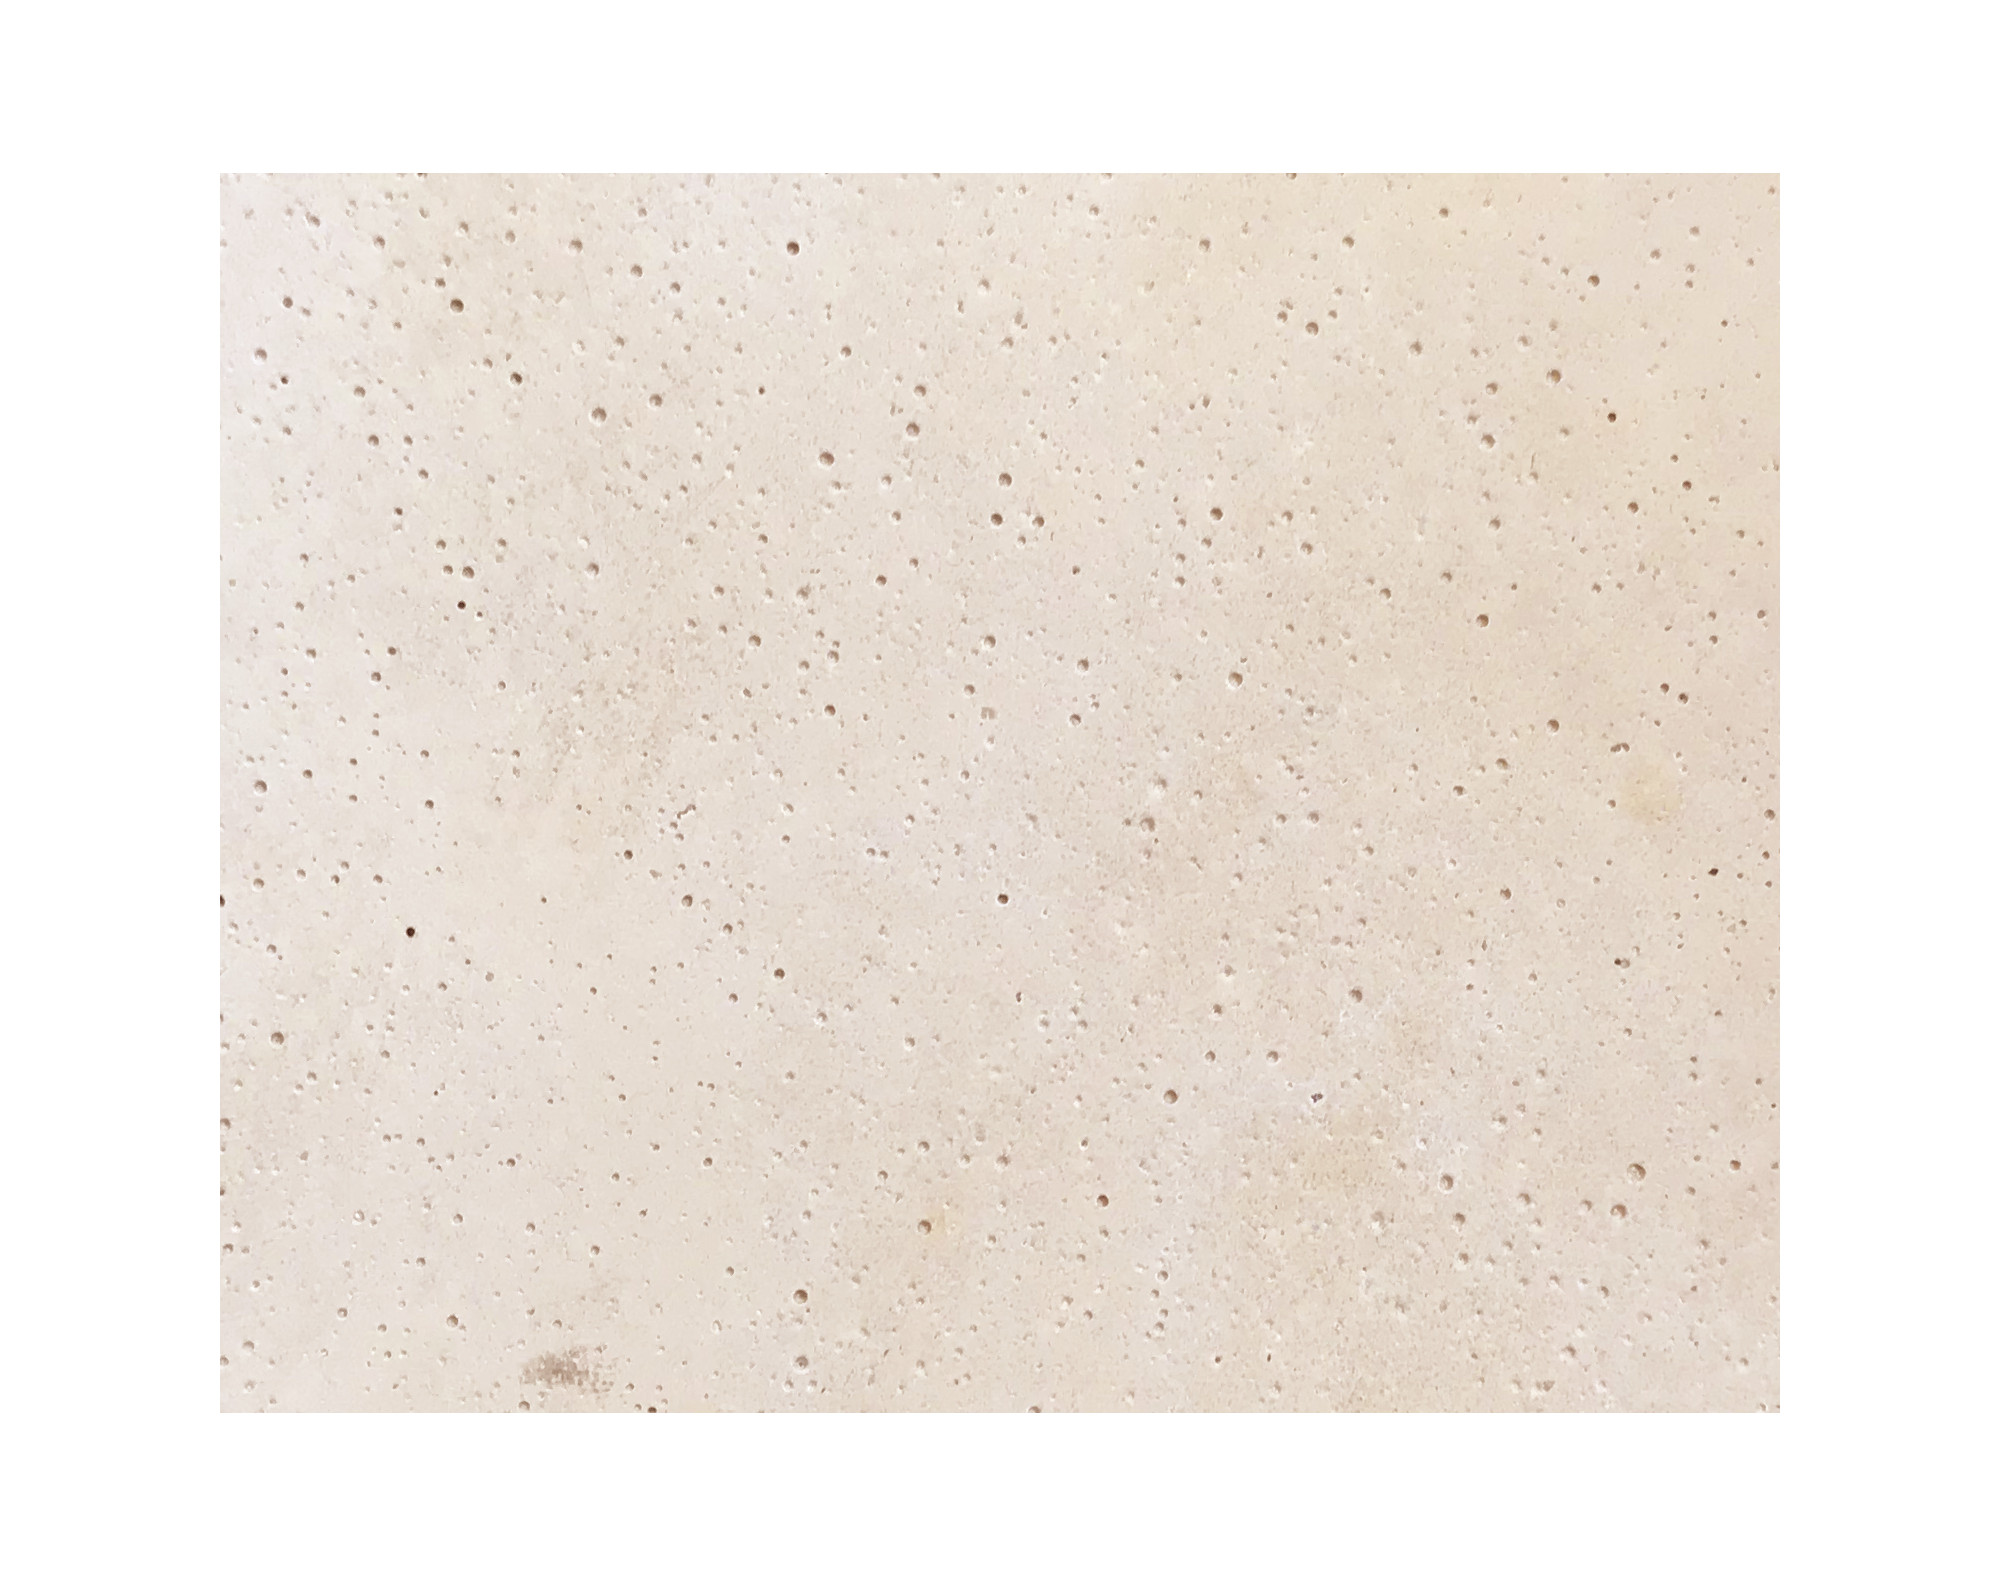 Harmo roc spartaset, olympia-serie, rond d:4,20m, indisch beige, beton